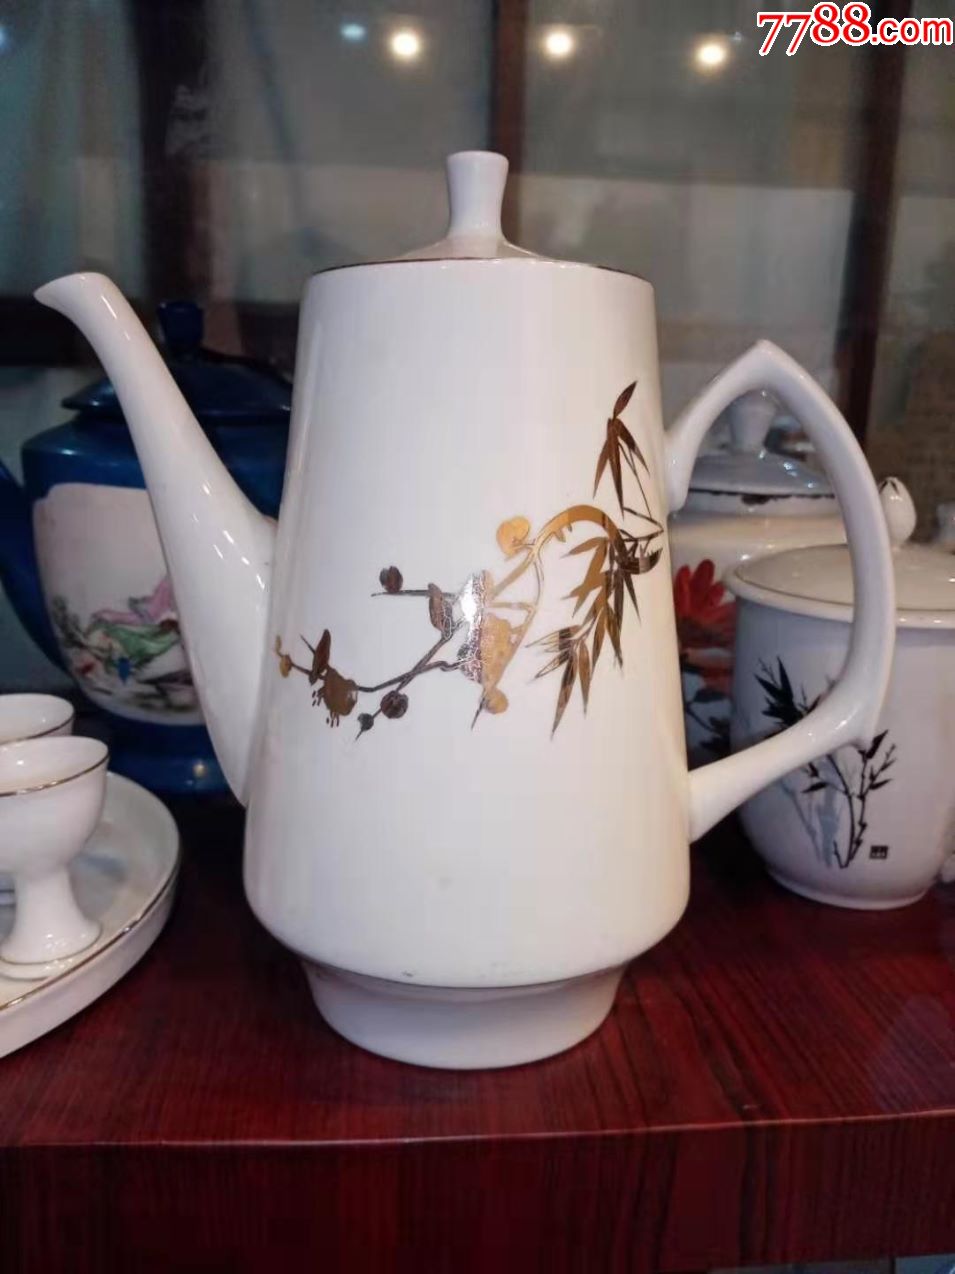 唐山五瓷茶壶图片